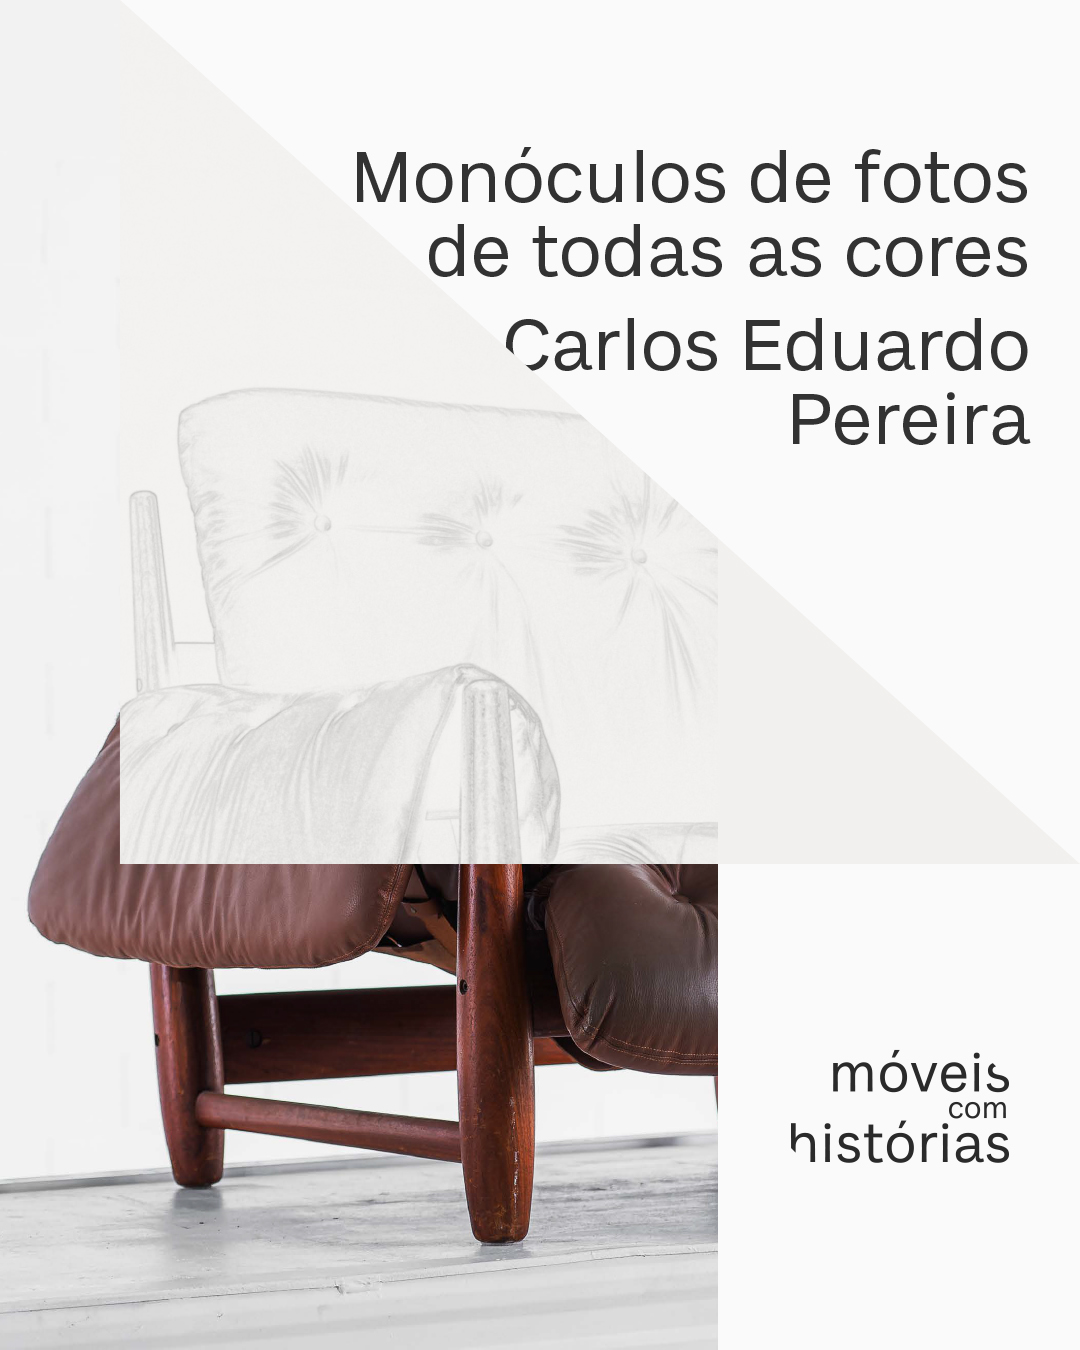 Lipe-Contos-Carlos Eduardo Pereira-4x5-1